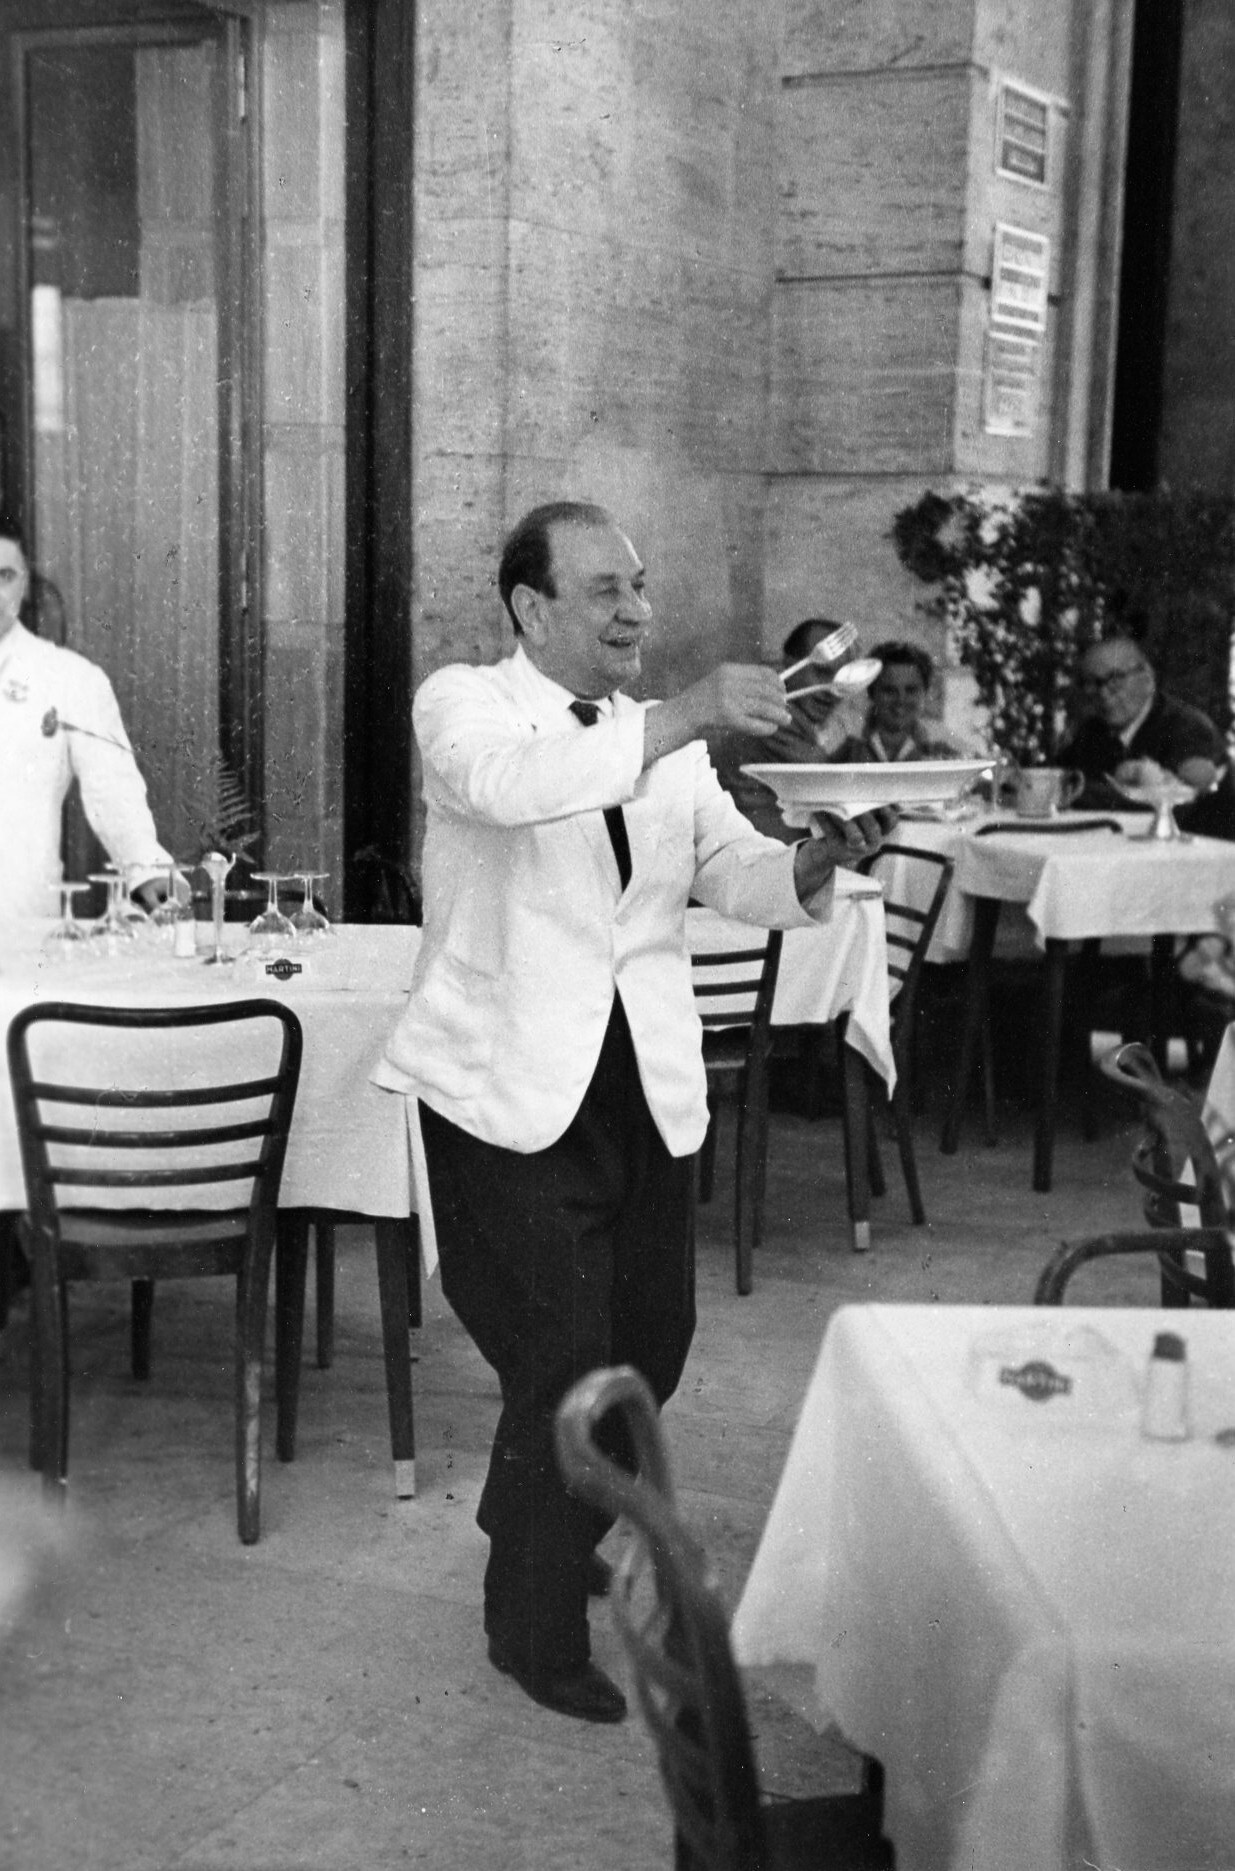 Официант подает пасту, Рим, Италия, 1951 год. Фотограф Рут Оркин